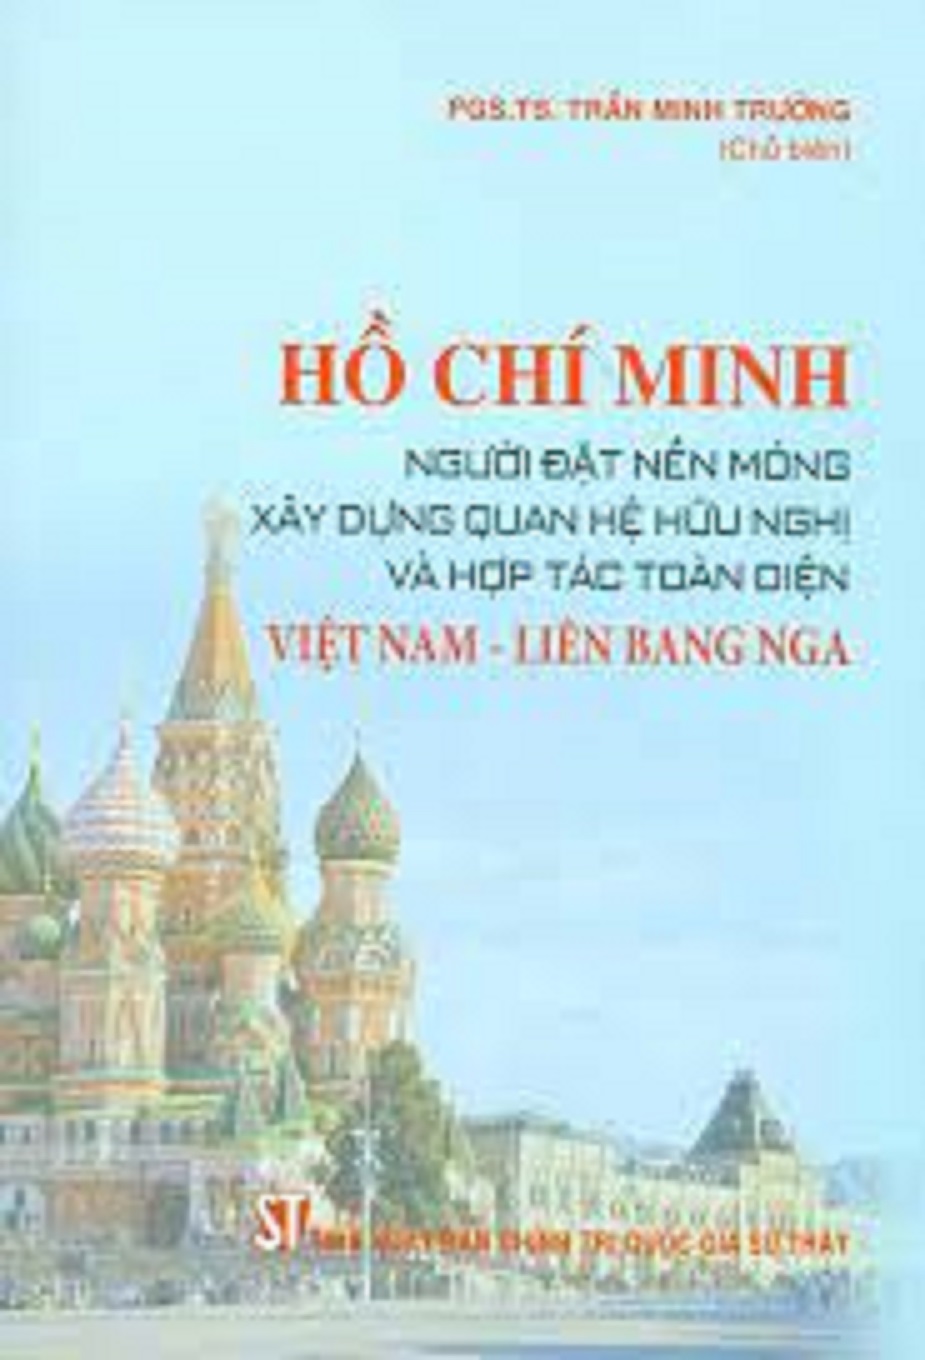 Hồ Chí Minh - Người đặt nền móng xây dựng quan hệ hữu nghị và hợp tác toàn diện Việt Nam - Liên bang Nga (bản in 2020)